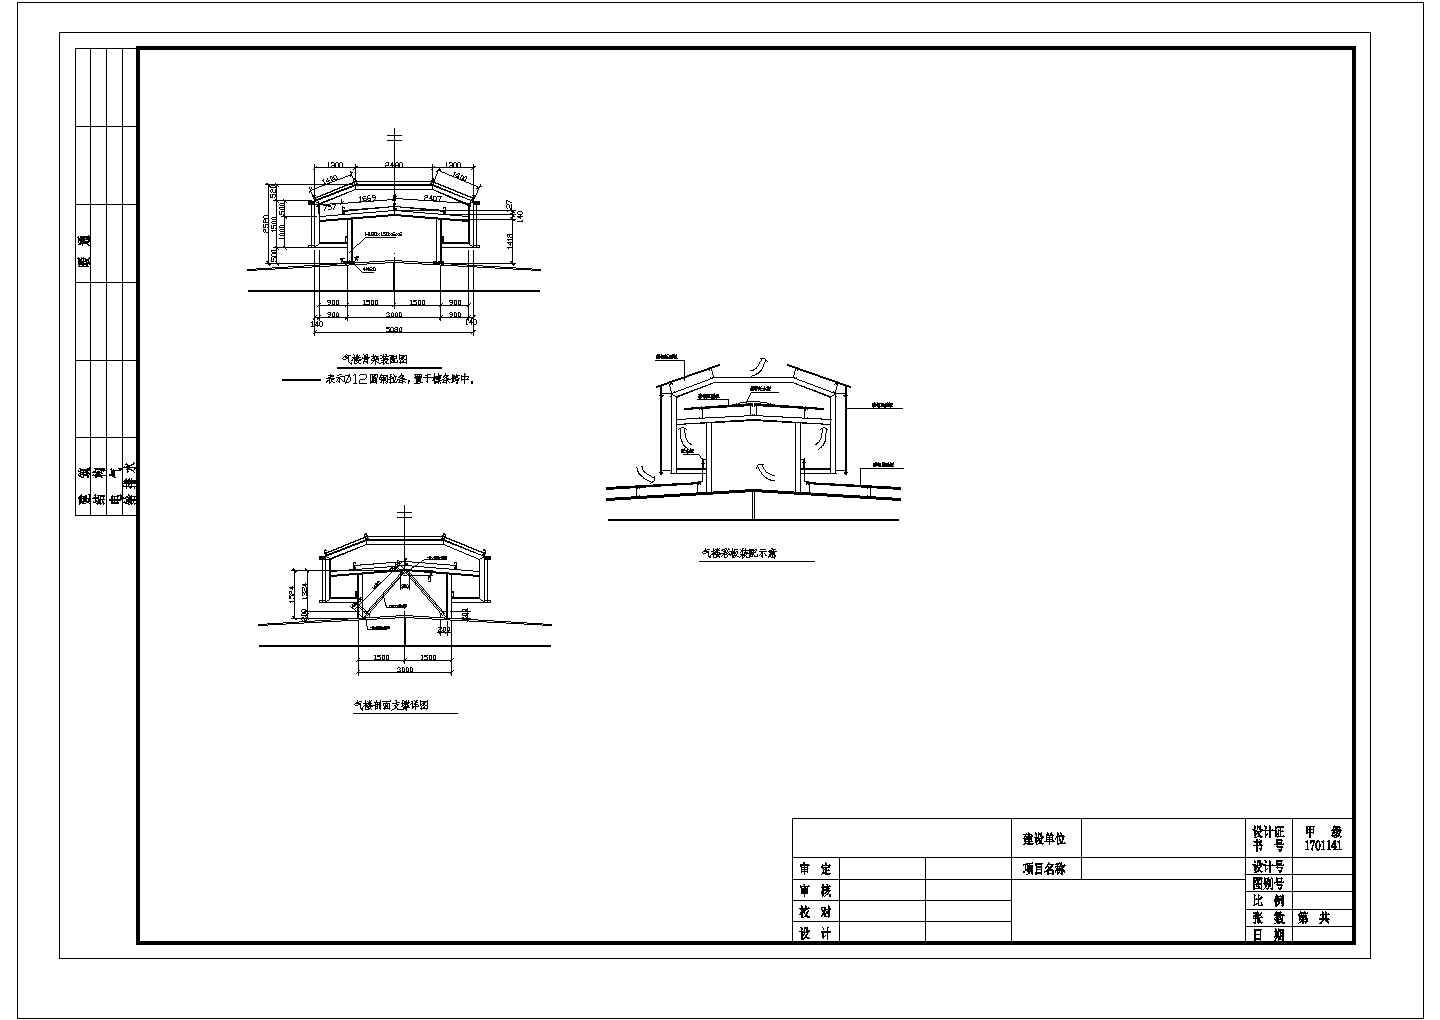 钢结构厂房屋面气楼图纸 DWG格式